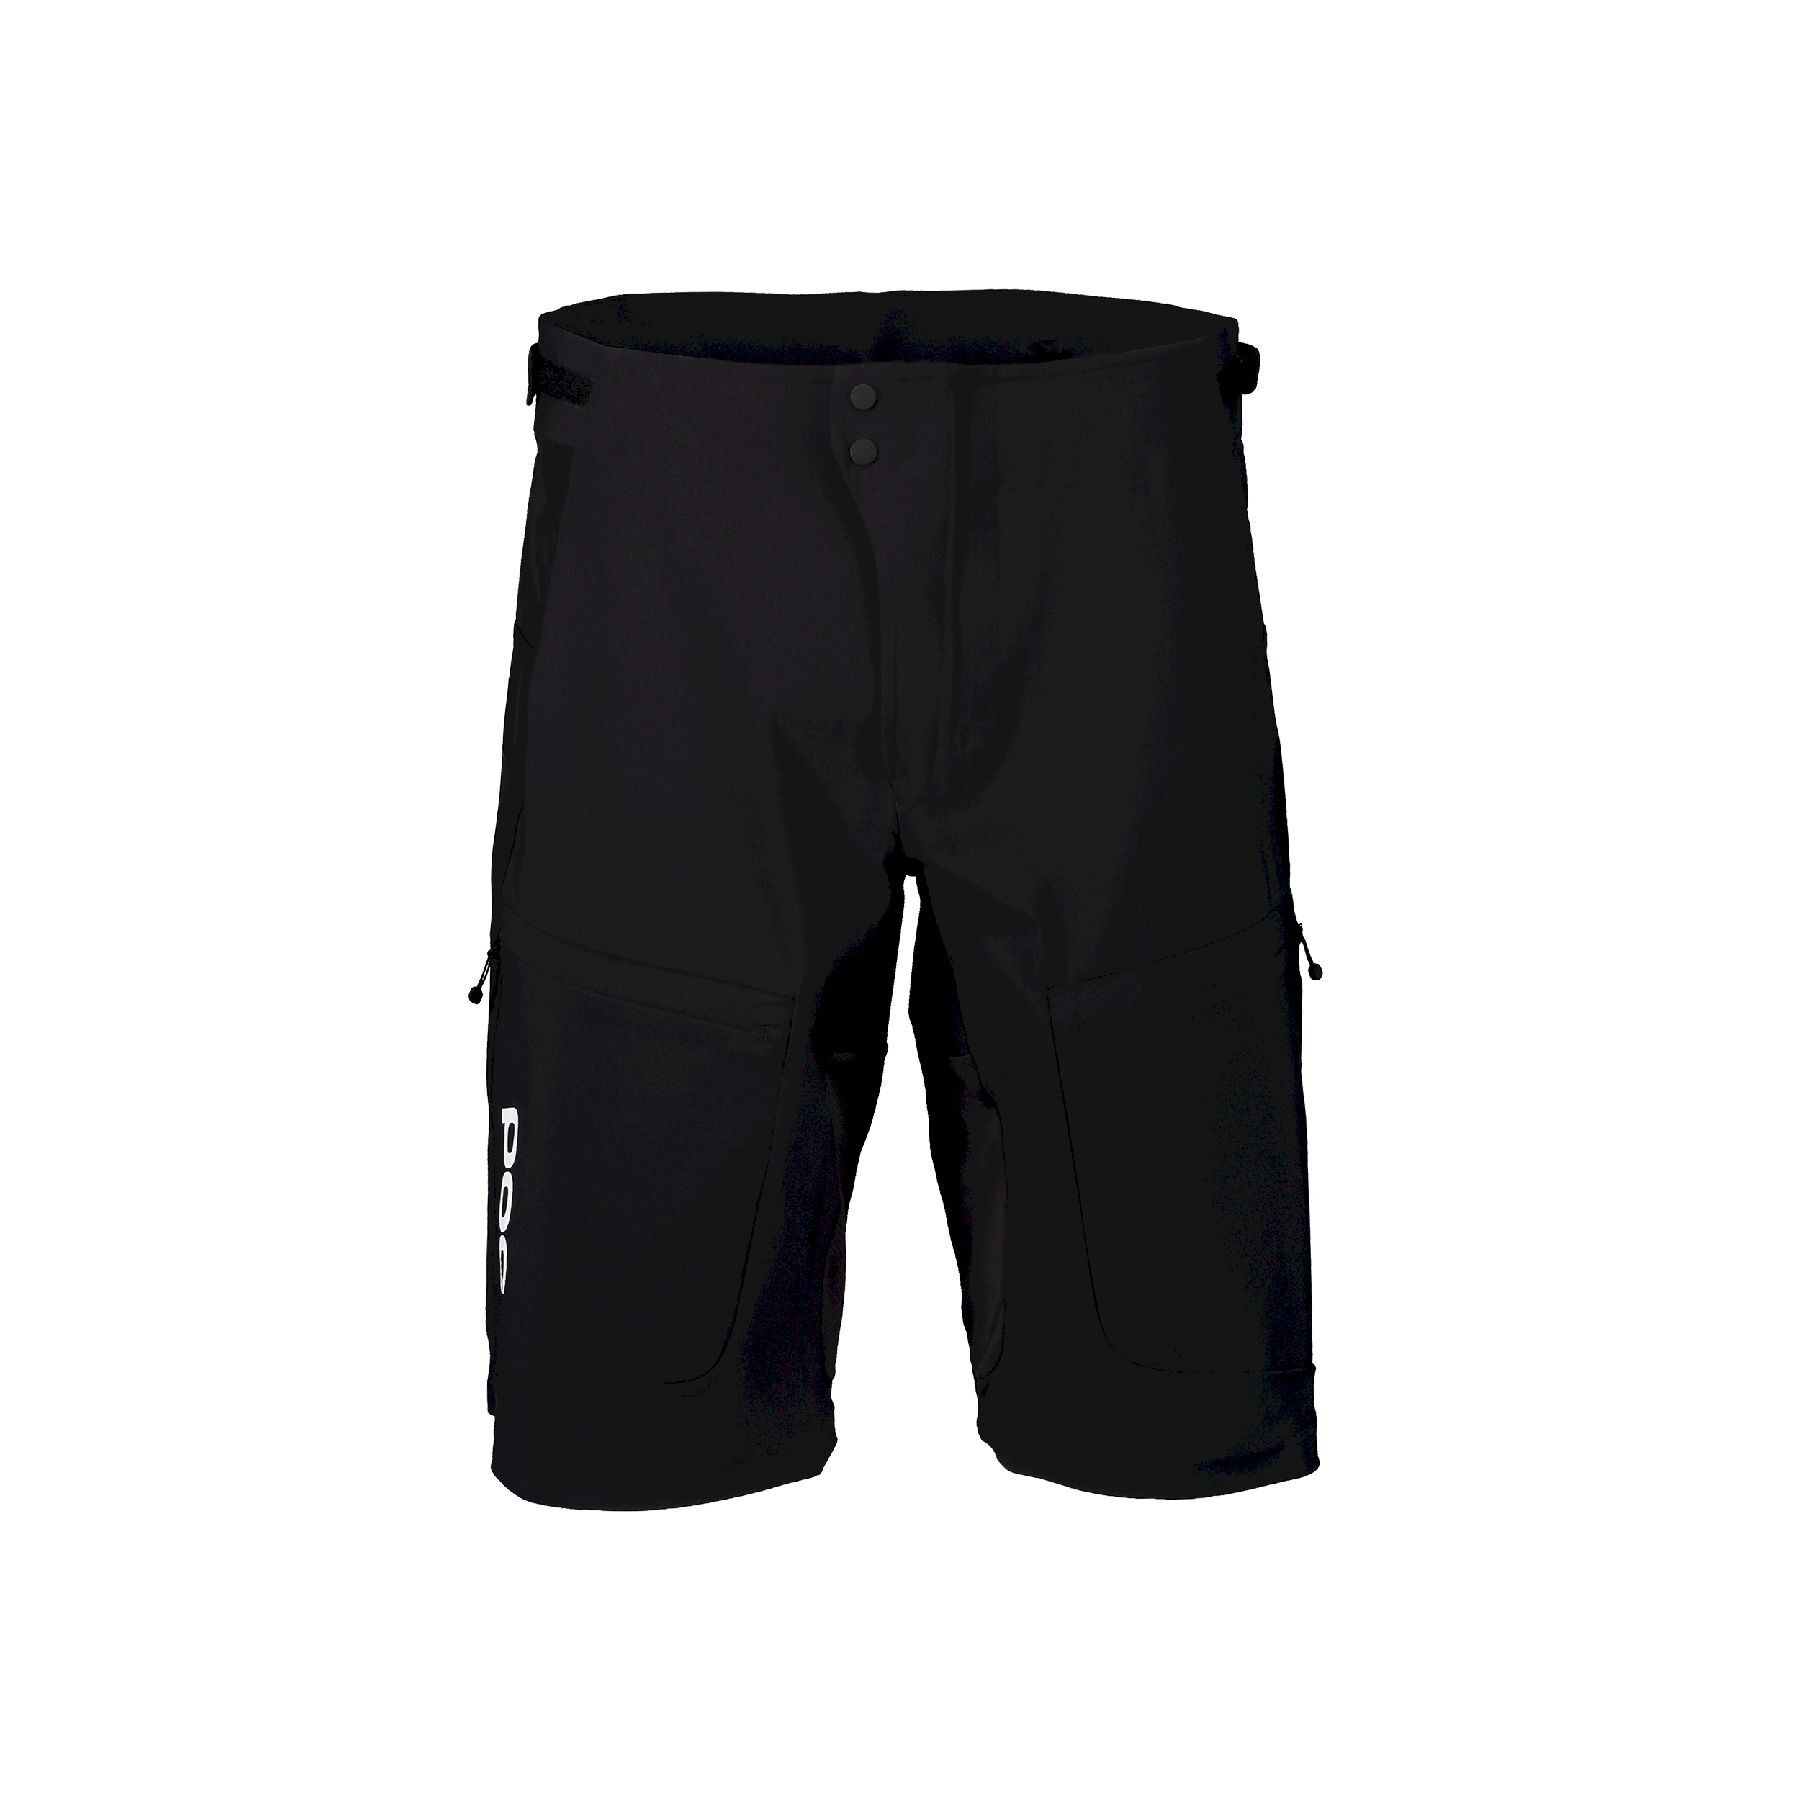 Poc Resistance Ultra Shorts - Pantalones cortos MTB - Hombre